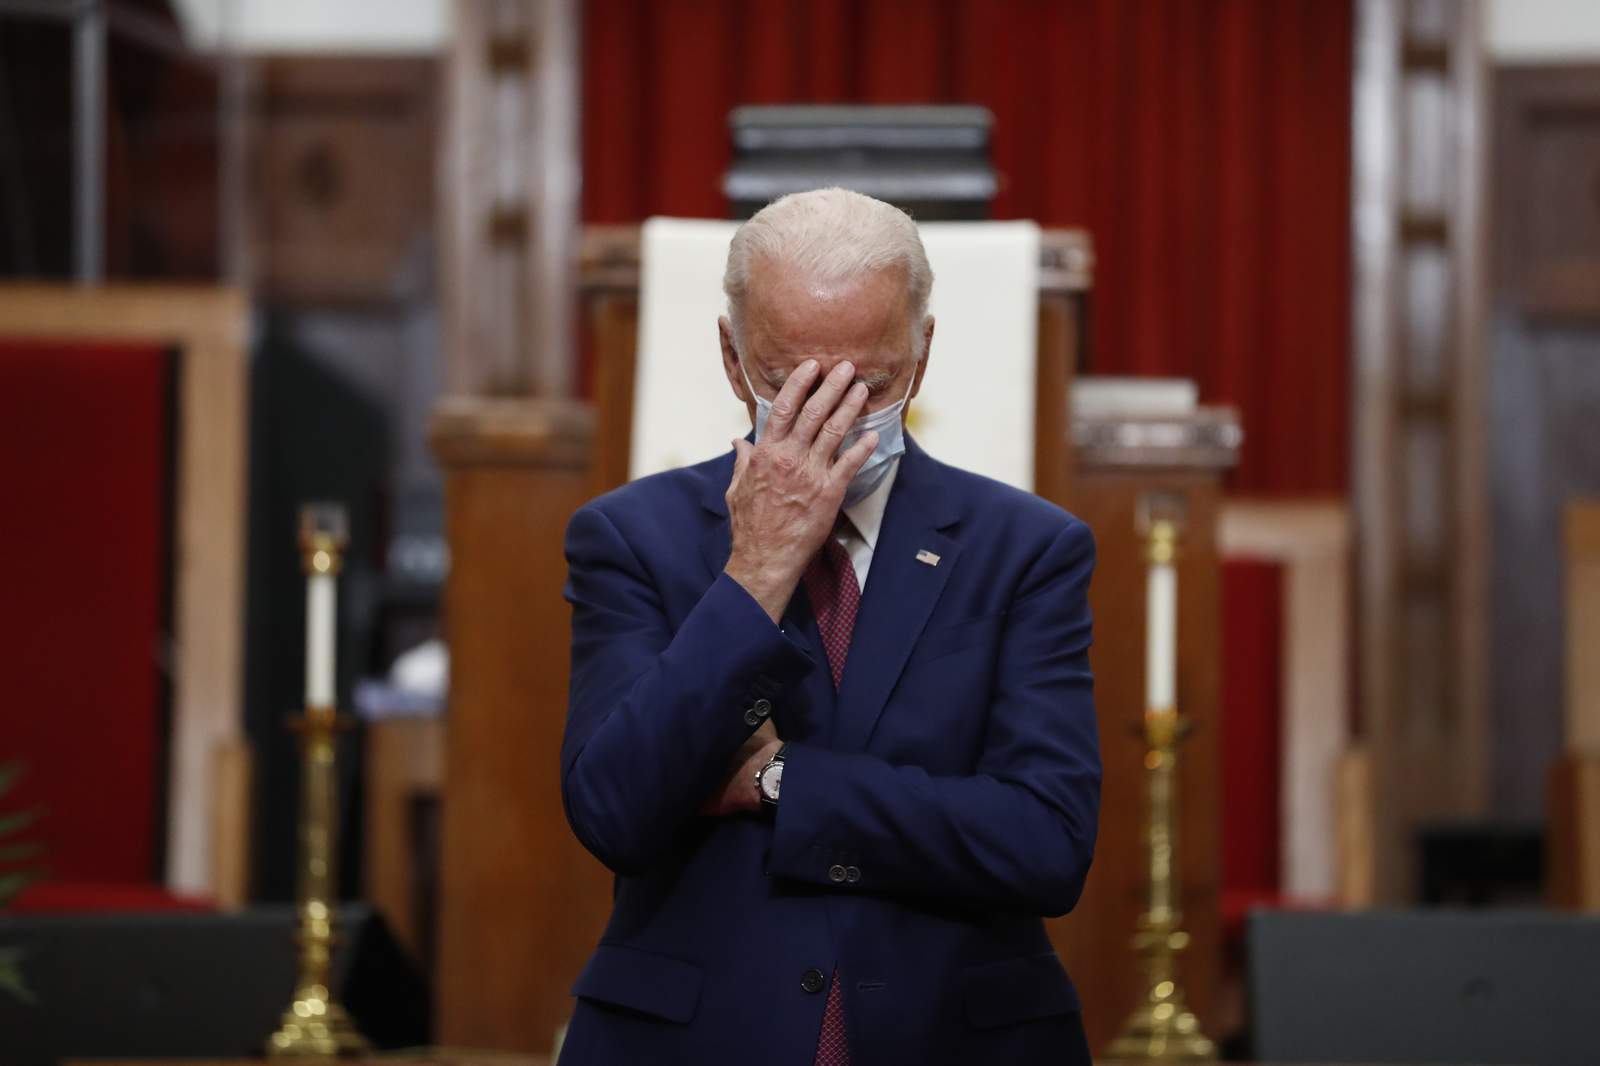 Biden's bid touts faith, courts even religious conservatives